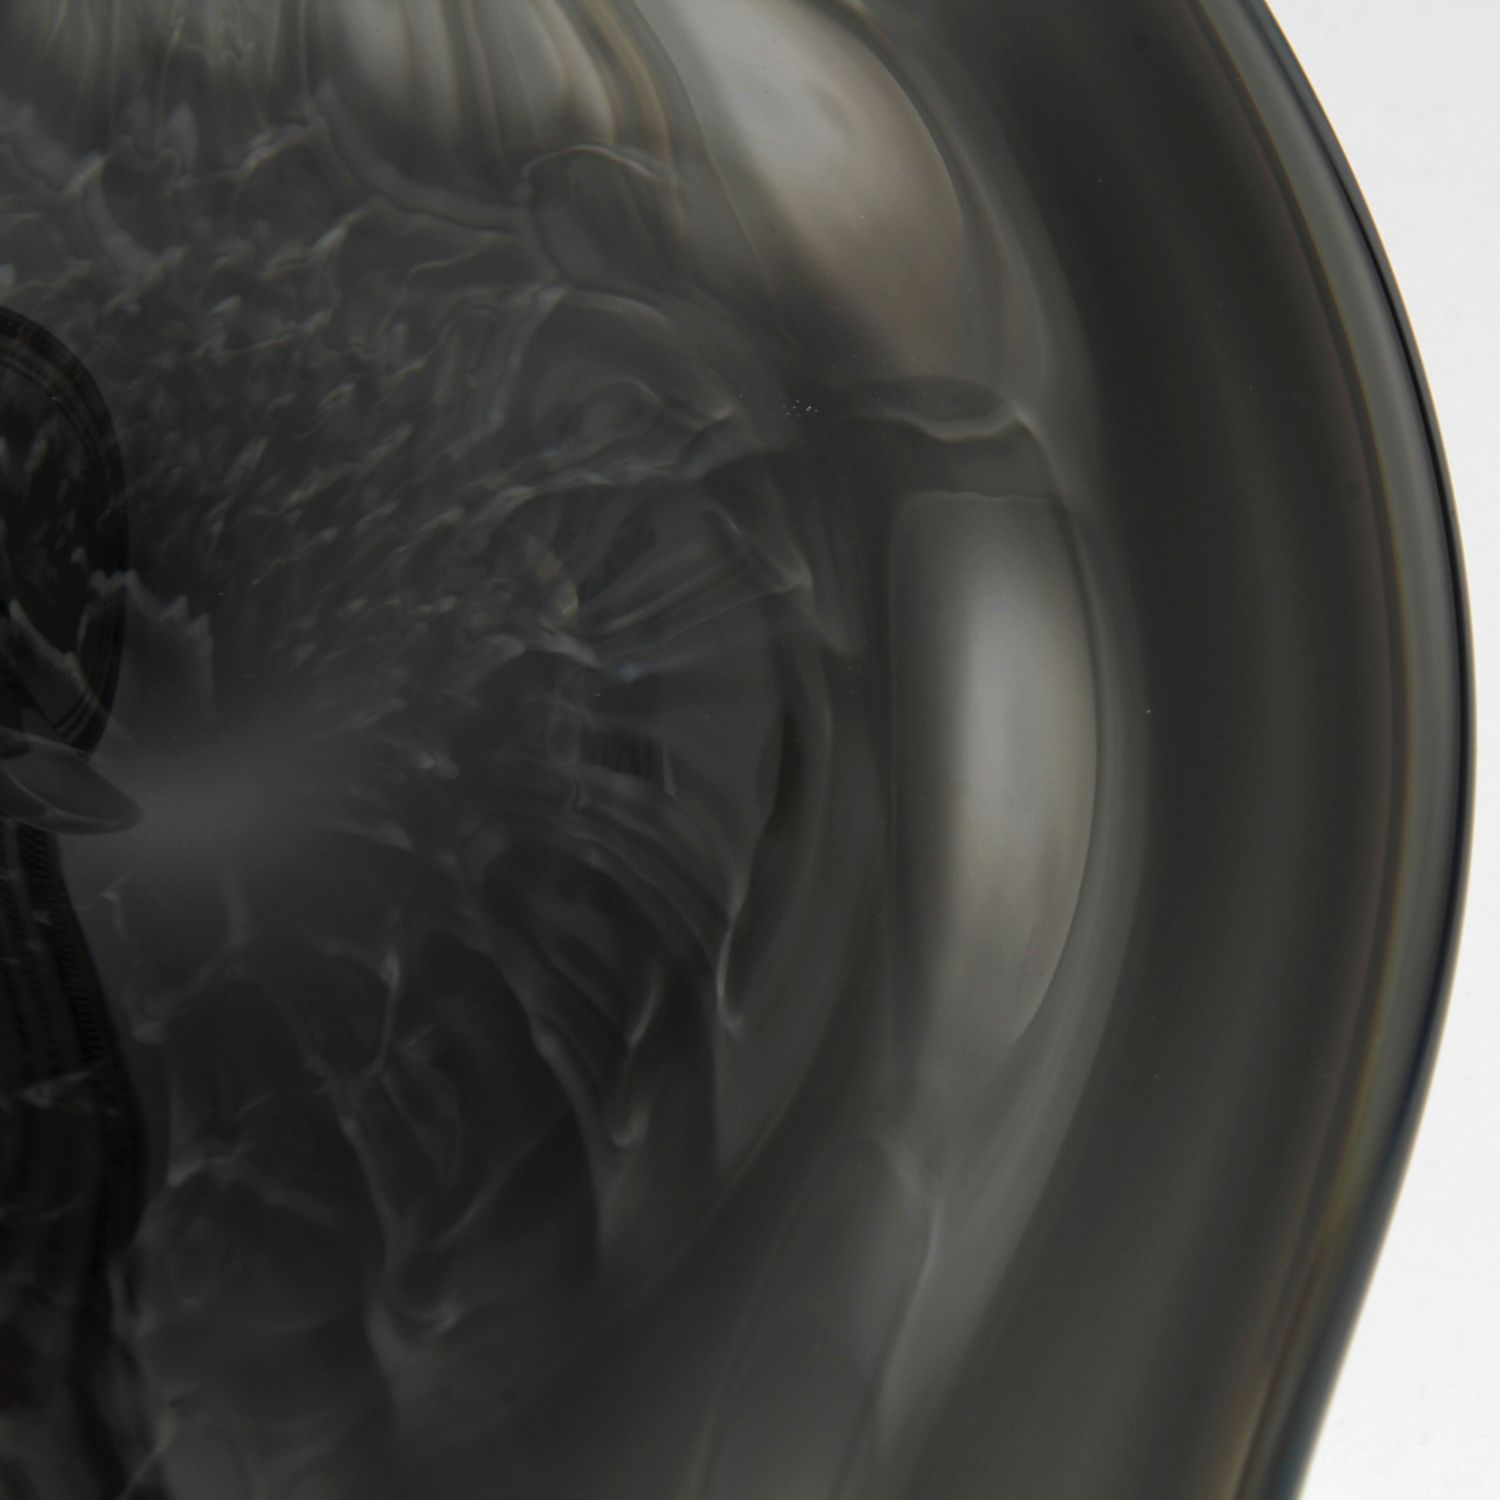 James Wardhaugh: Manta Platter – Grey Product Image 3 of 6